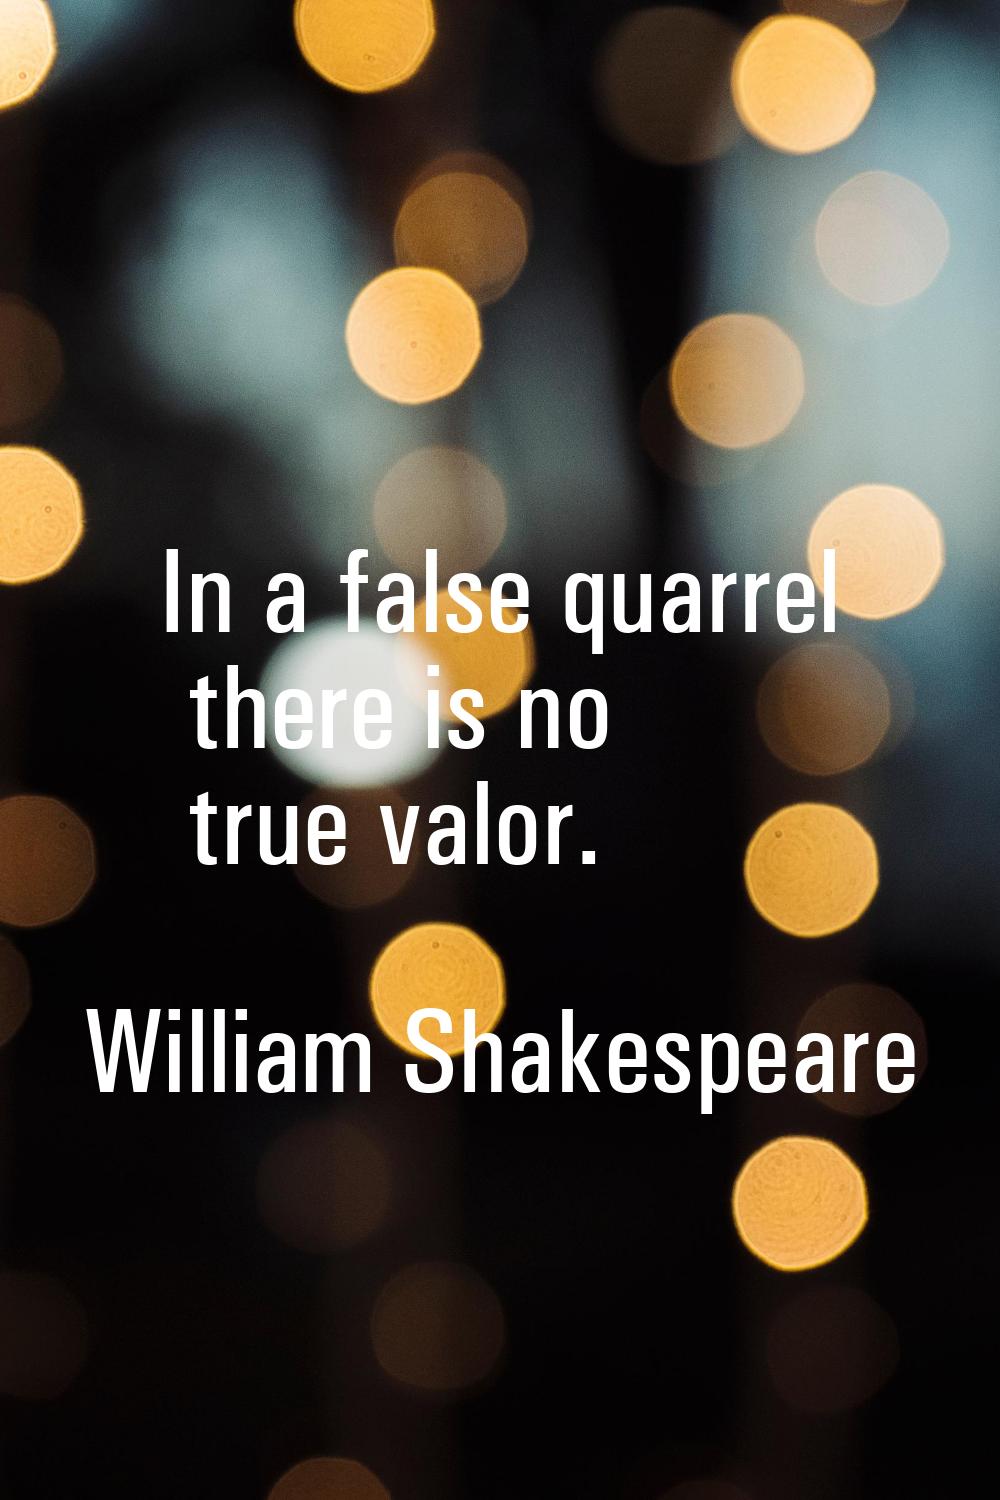 In a false quarrel there is no true valor.